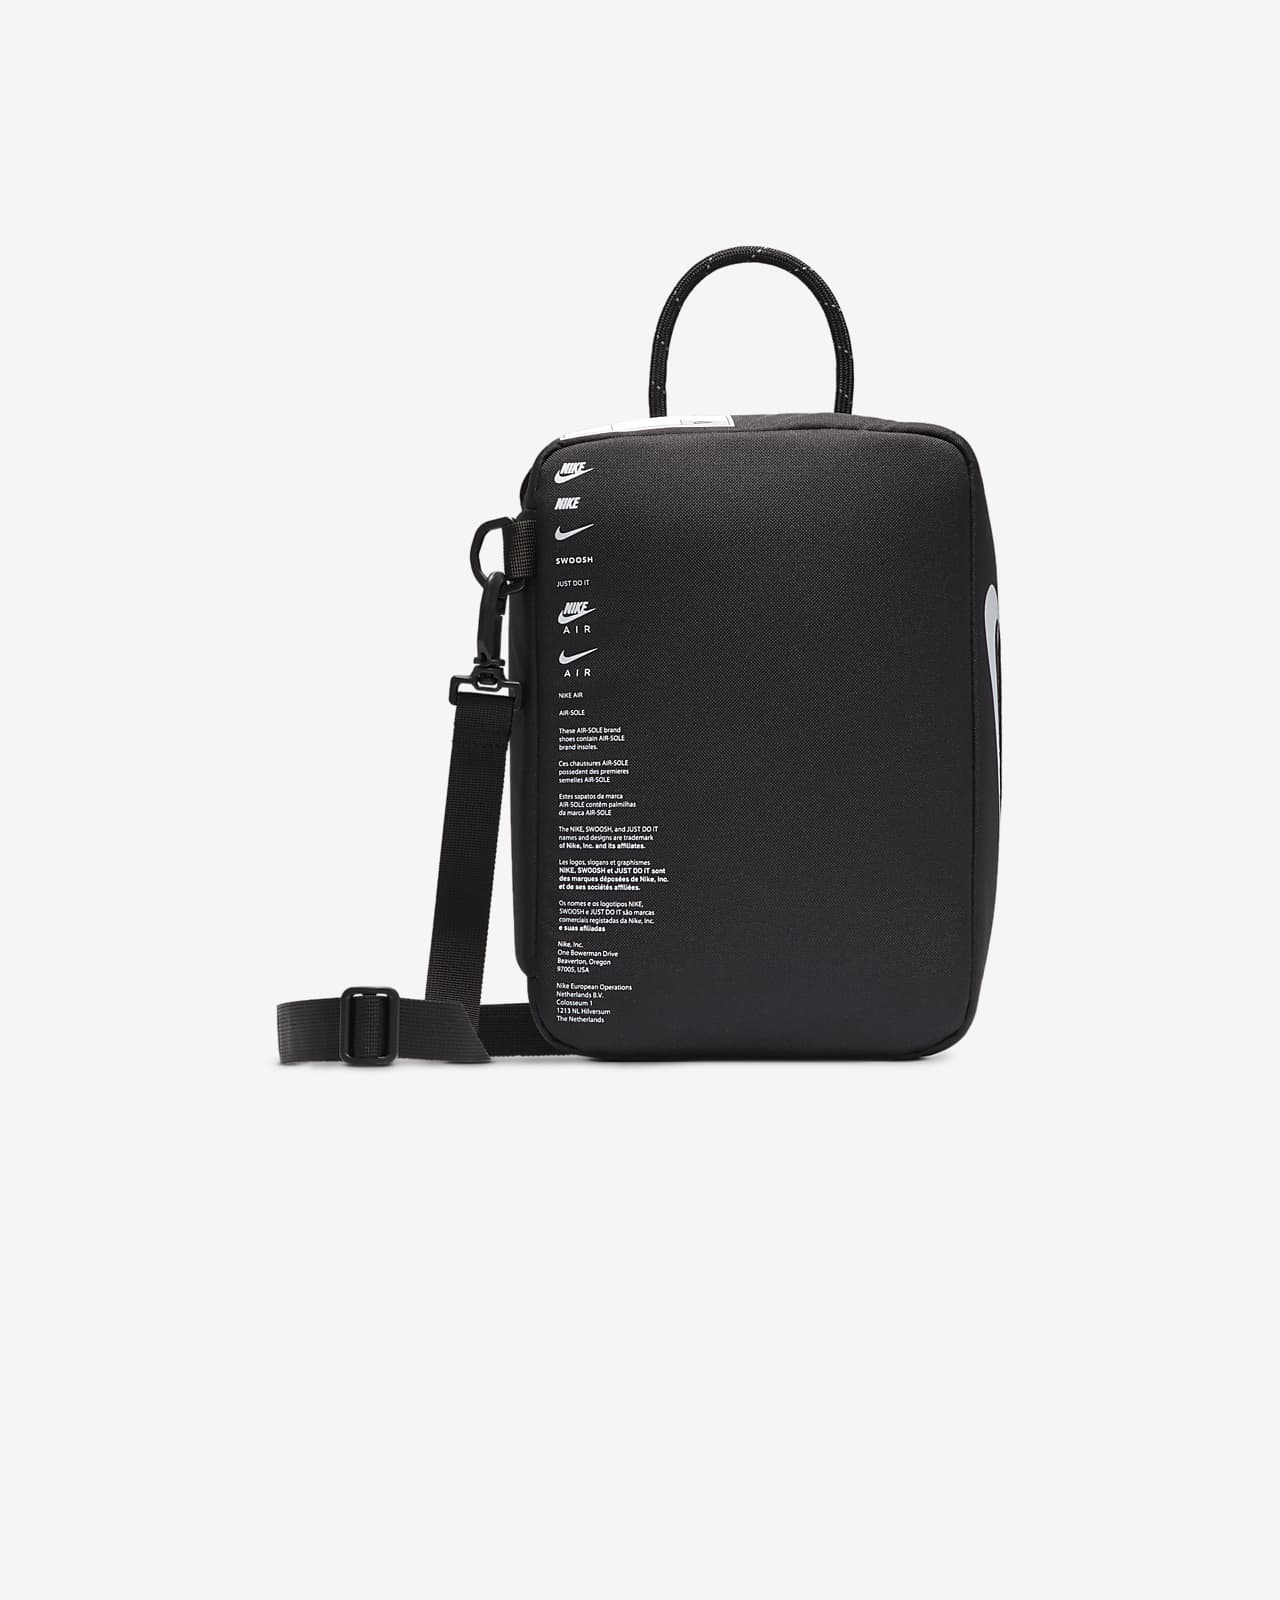 Caprese Enora Laptop Bag Large – Caprese Bags